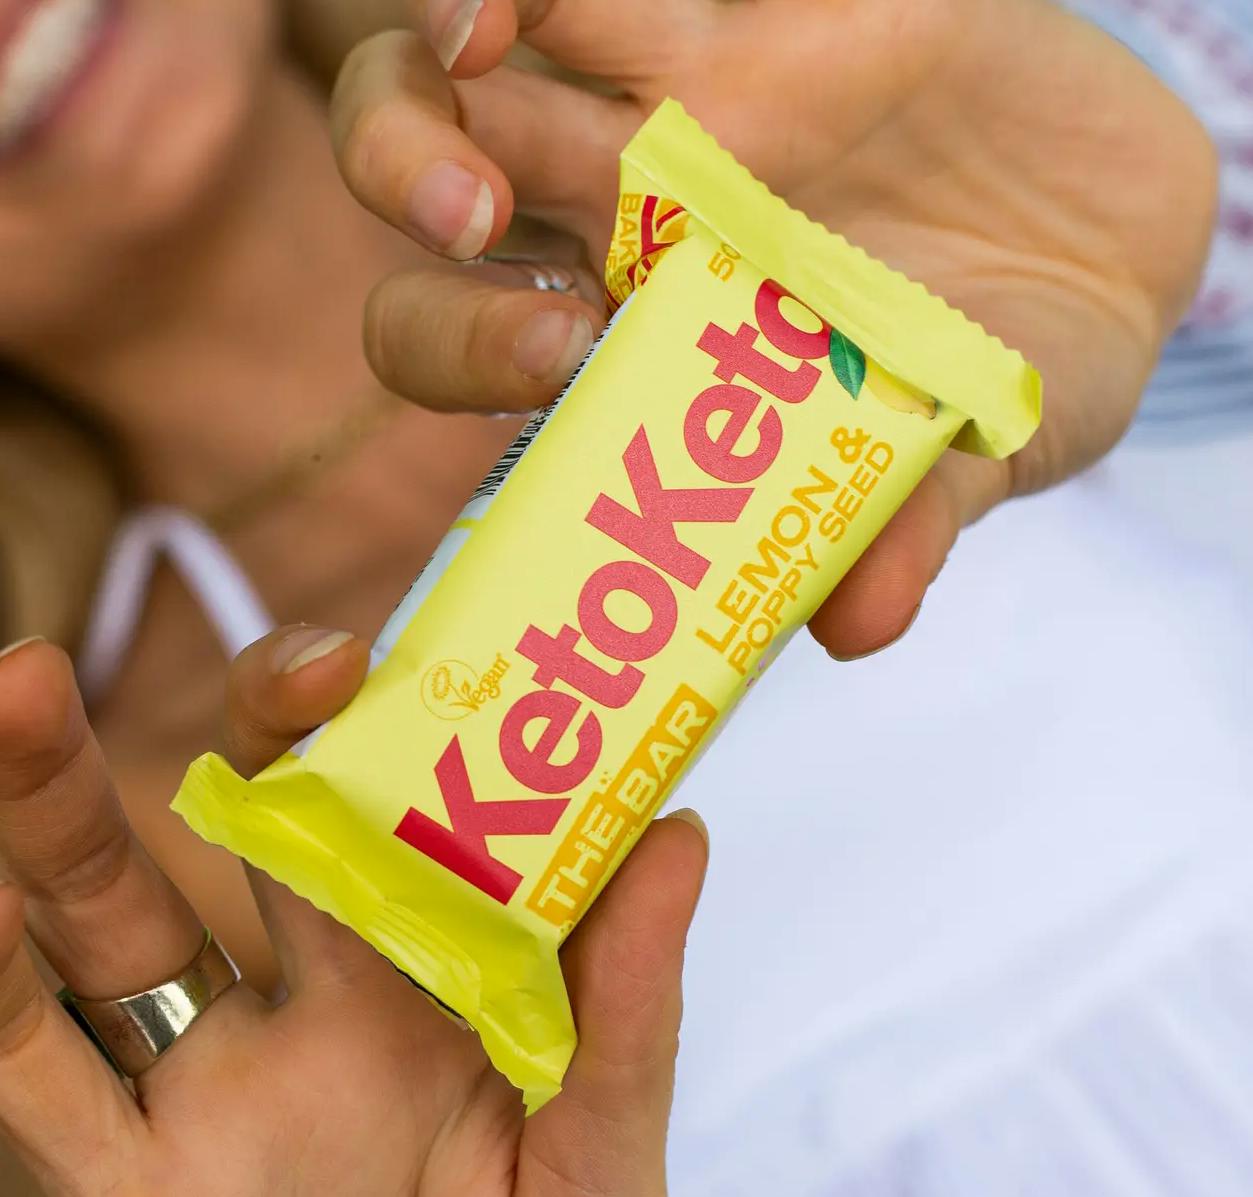 KetoKeto snack